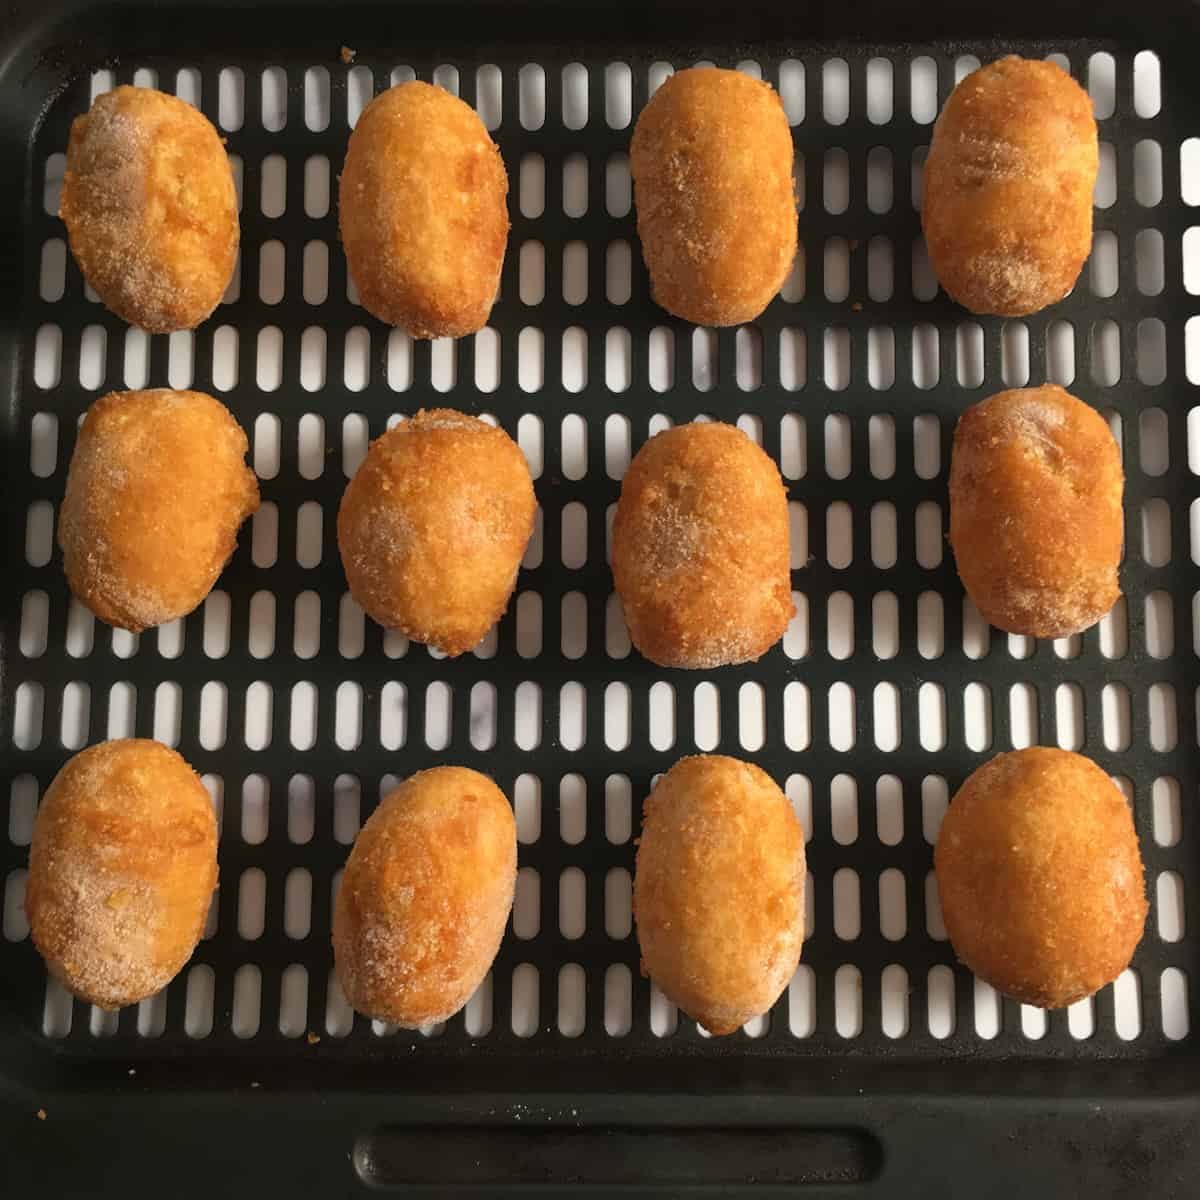 frozen mini corn dogs in air fryer